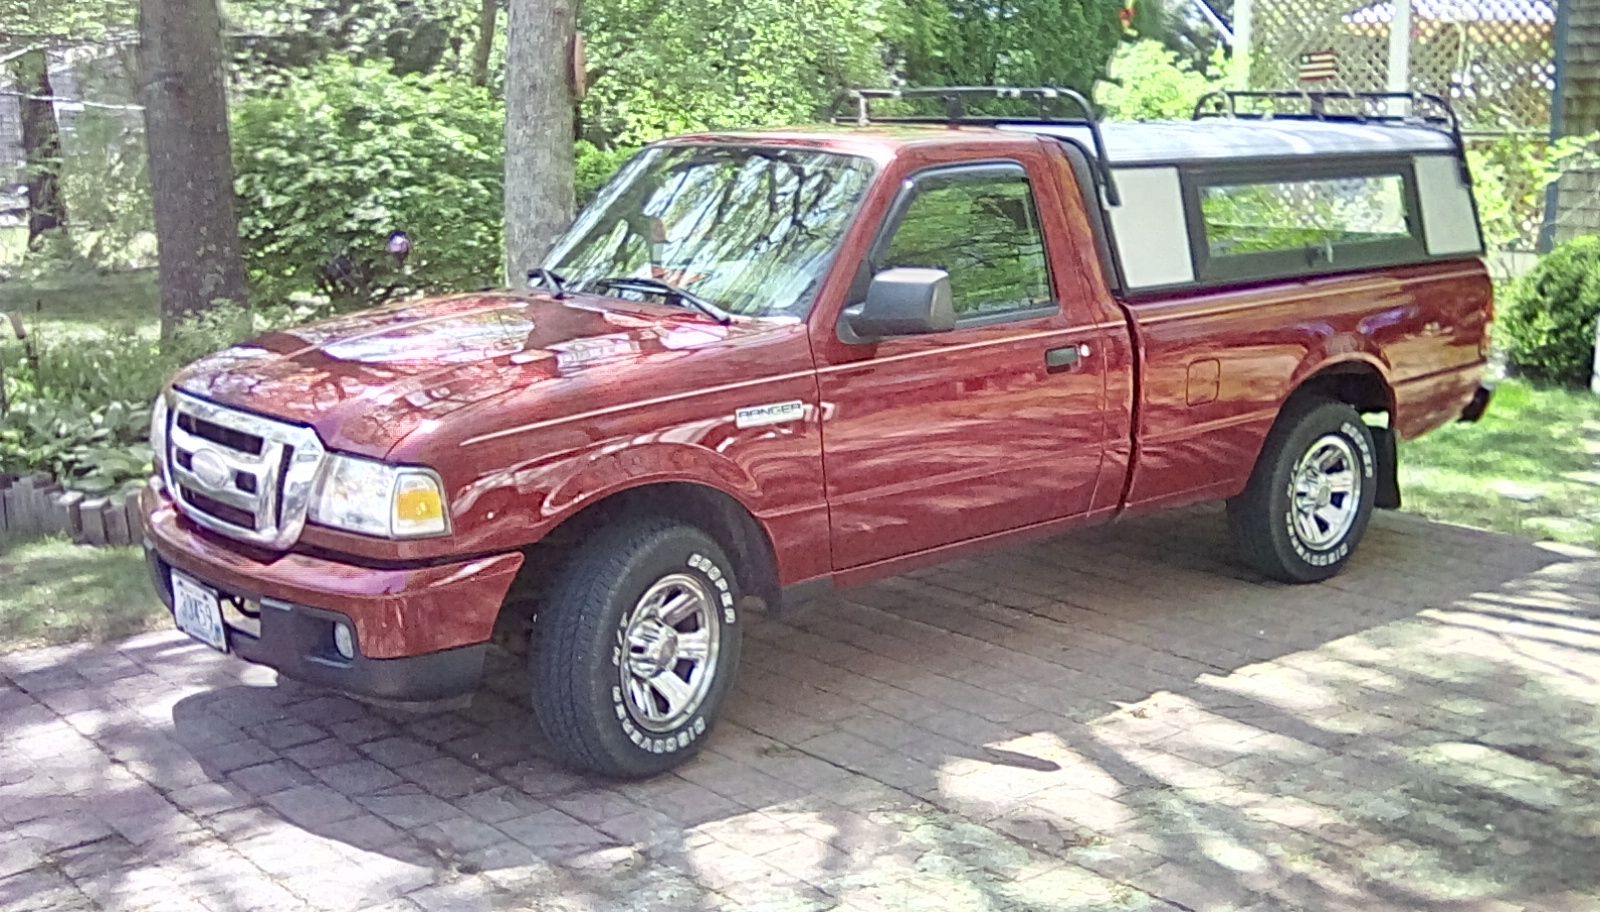  Ford Ranger Pickup